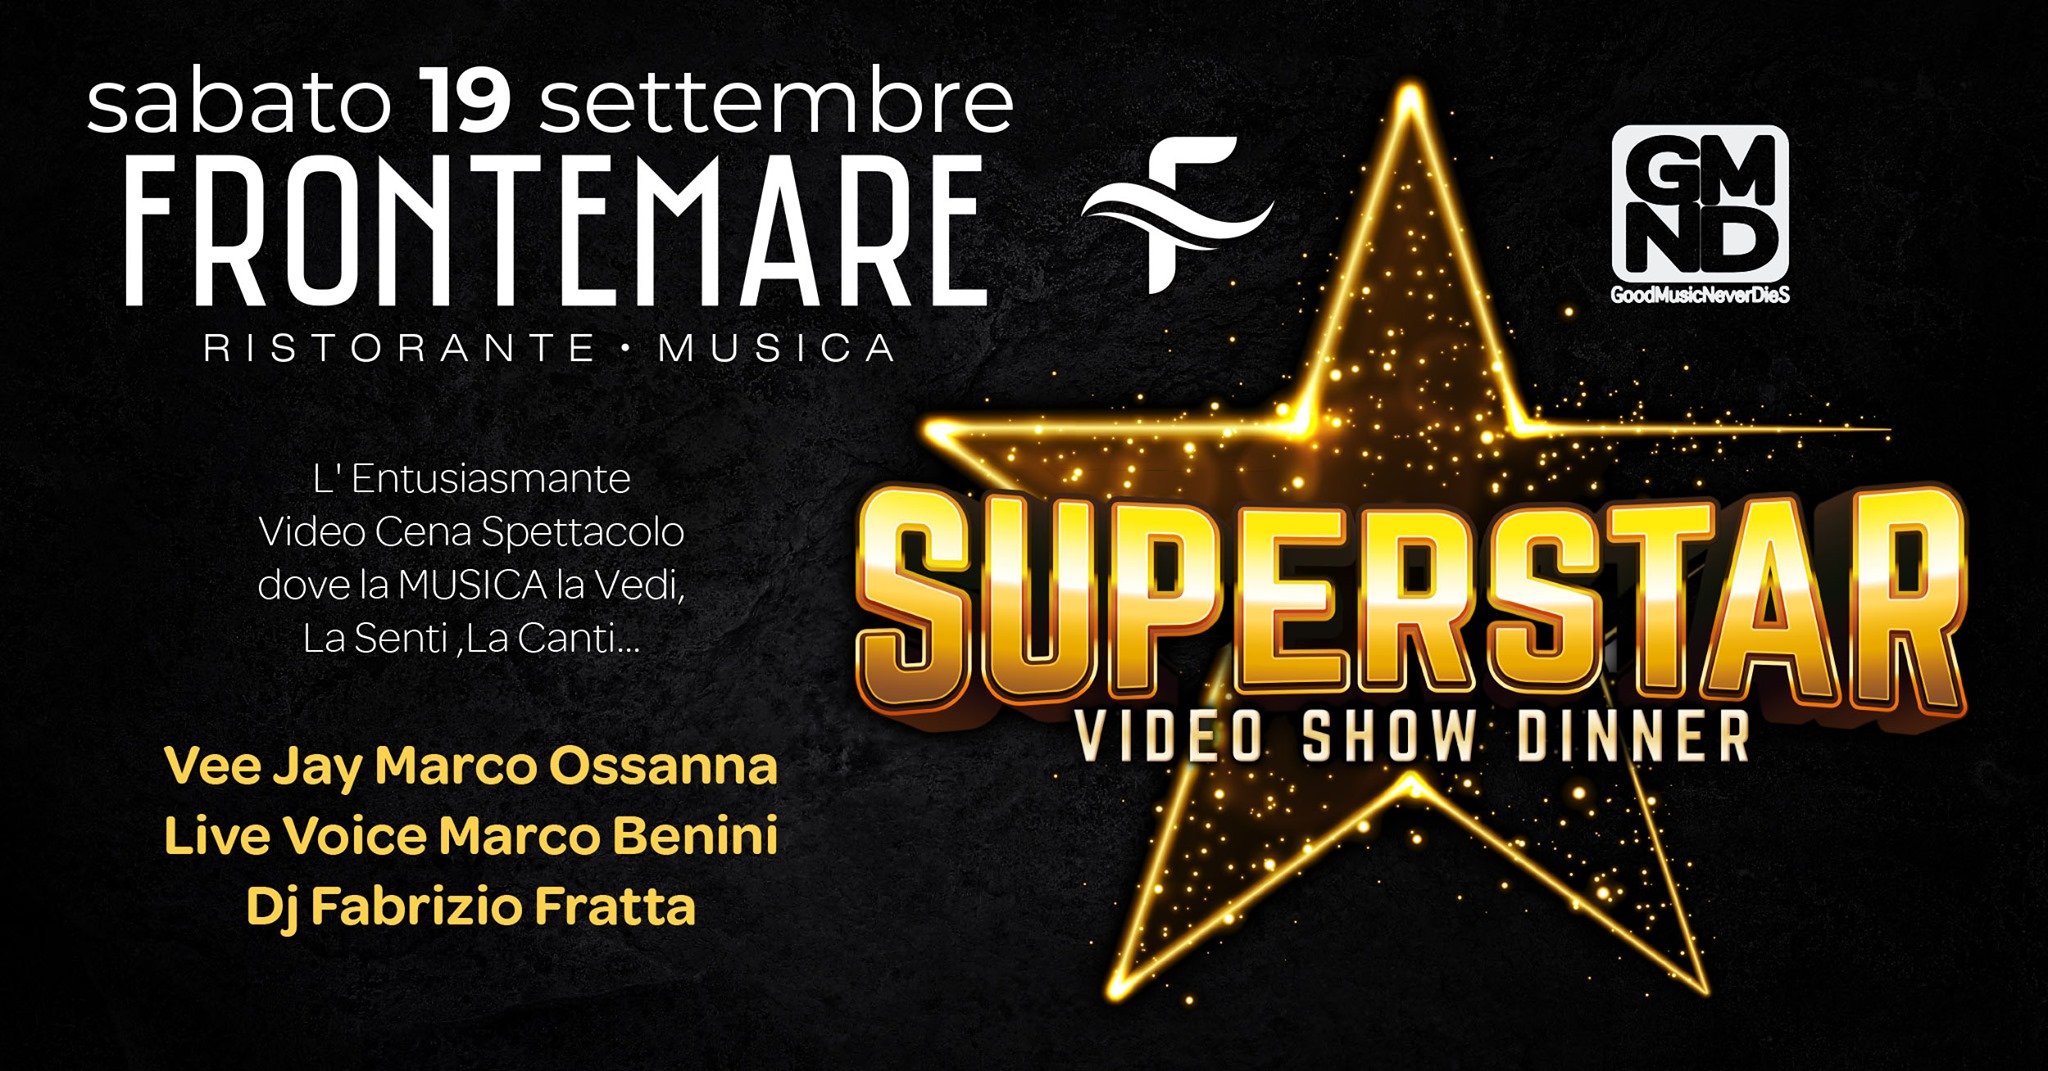 Super Star video show dinner al Frontemare di Rimini